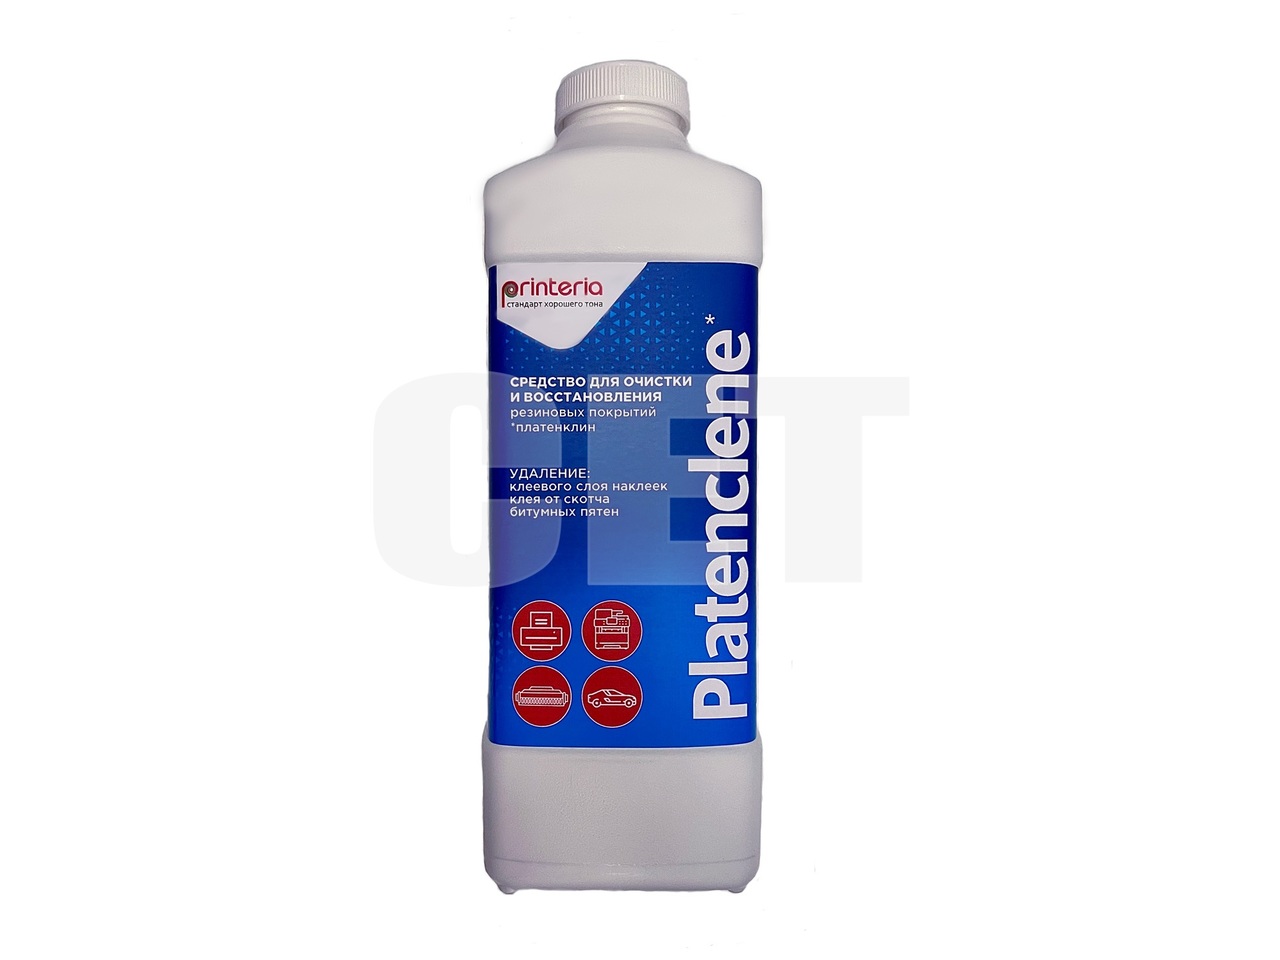 Средство для очистки и восстановления резиновыхповерхностей Platenclene (Printeria), 1л, DGP54434